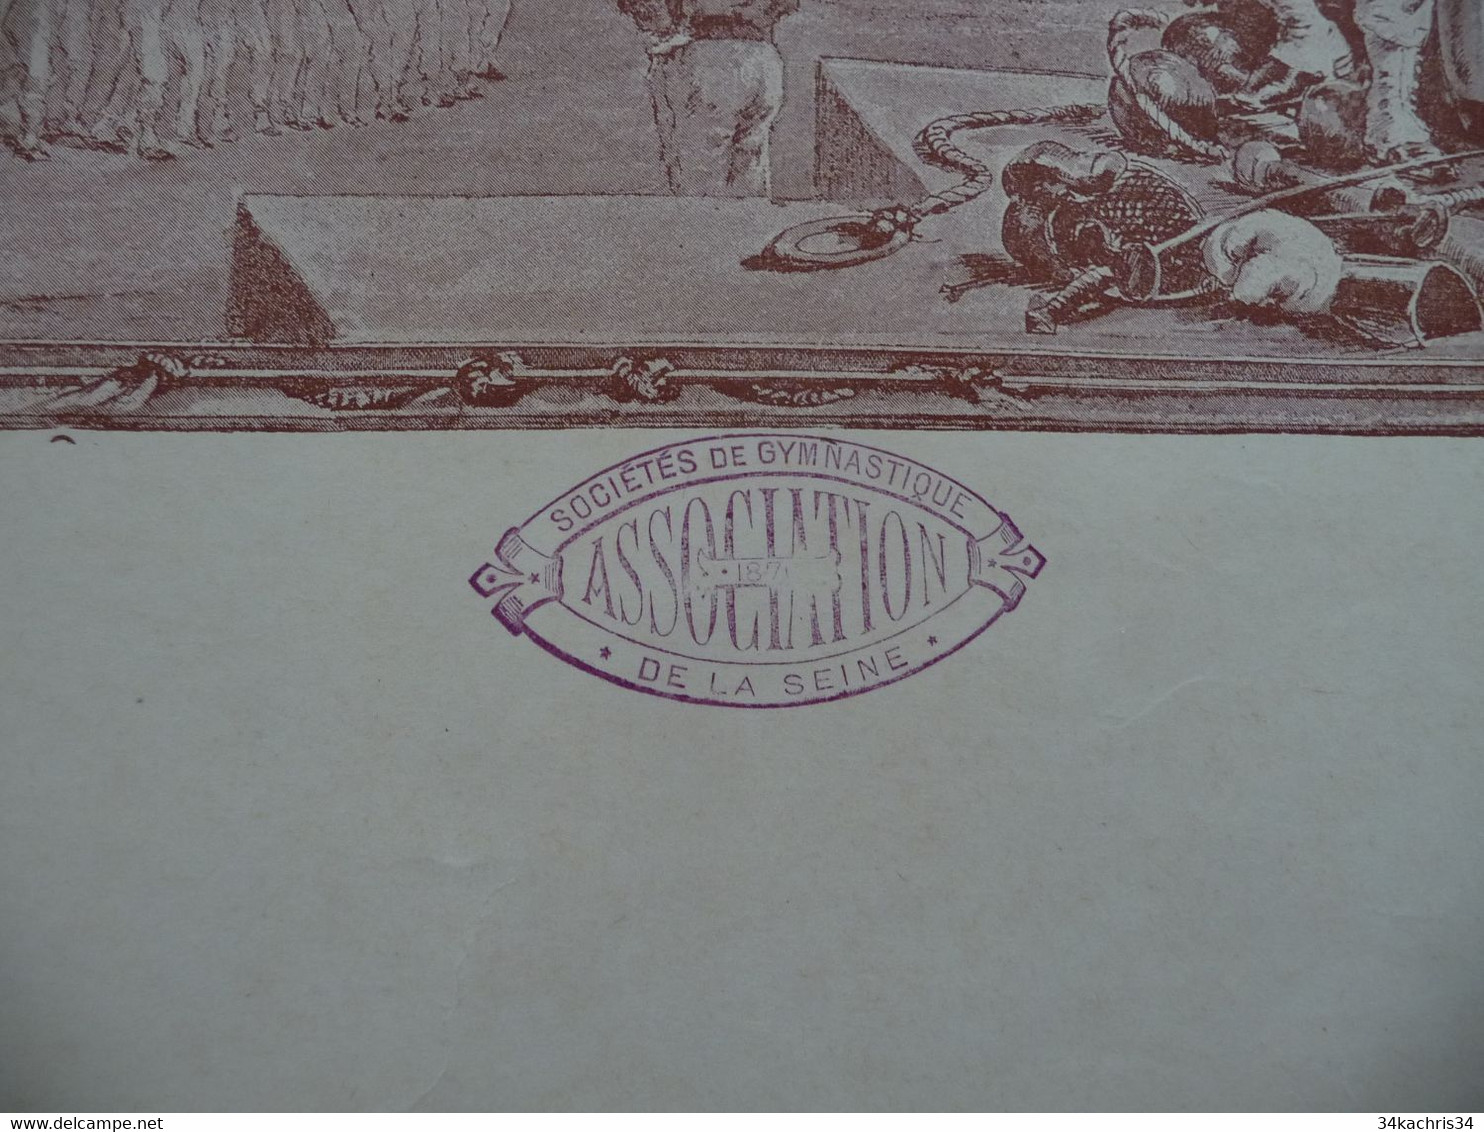 Diplôme Seine 5ème Concours De Gymnastique Illustré Par Paul Merwat 06/11/1887 Prix De Courses 56 X 45 - Diploma & School Reports